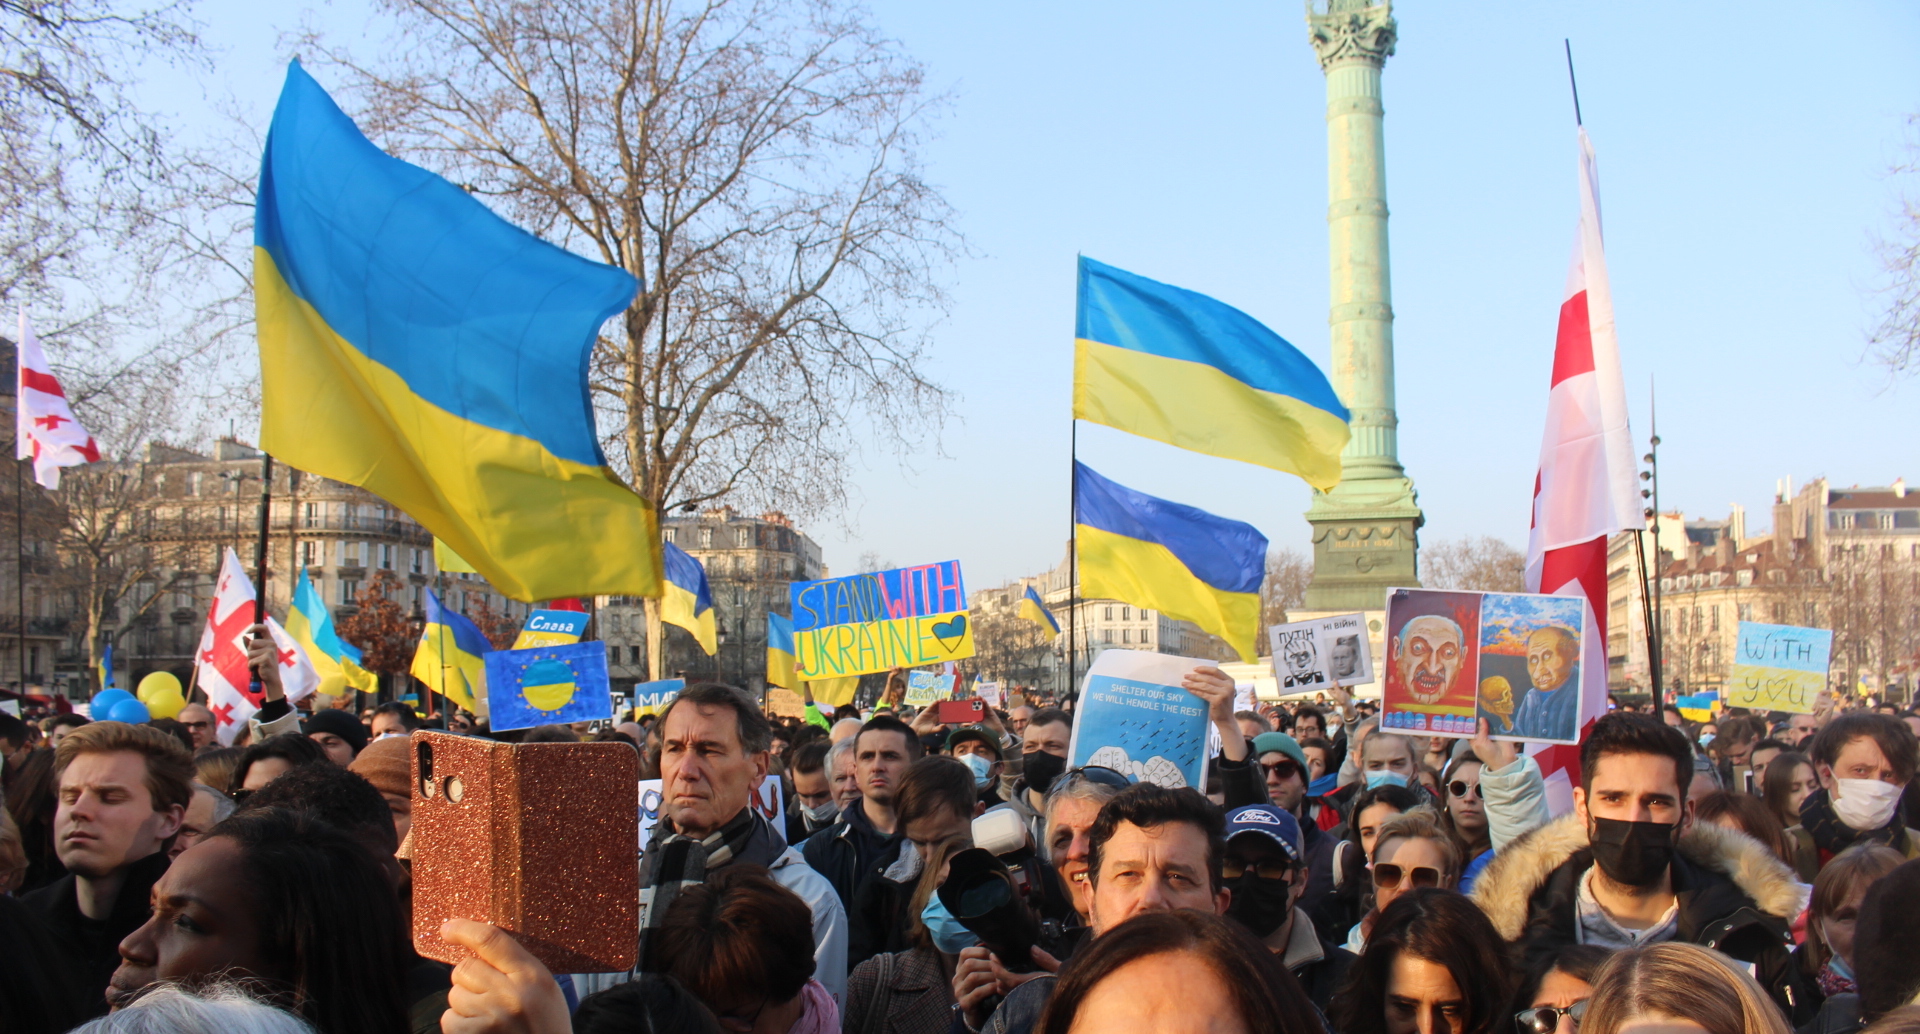 Place de la Bastille, les manifestants soutiennent l'Ukraine, avec des drapeaux et des pancartes aux couleurs de l'Ukraine, le jaune et le bleu. Au fond on voit la colonne de la Bastille.